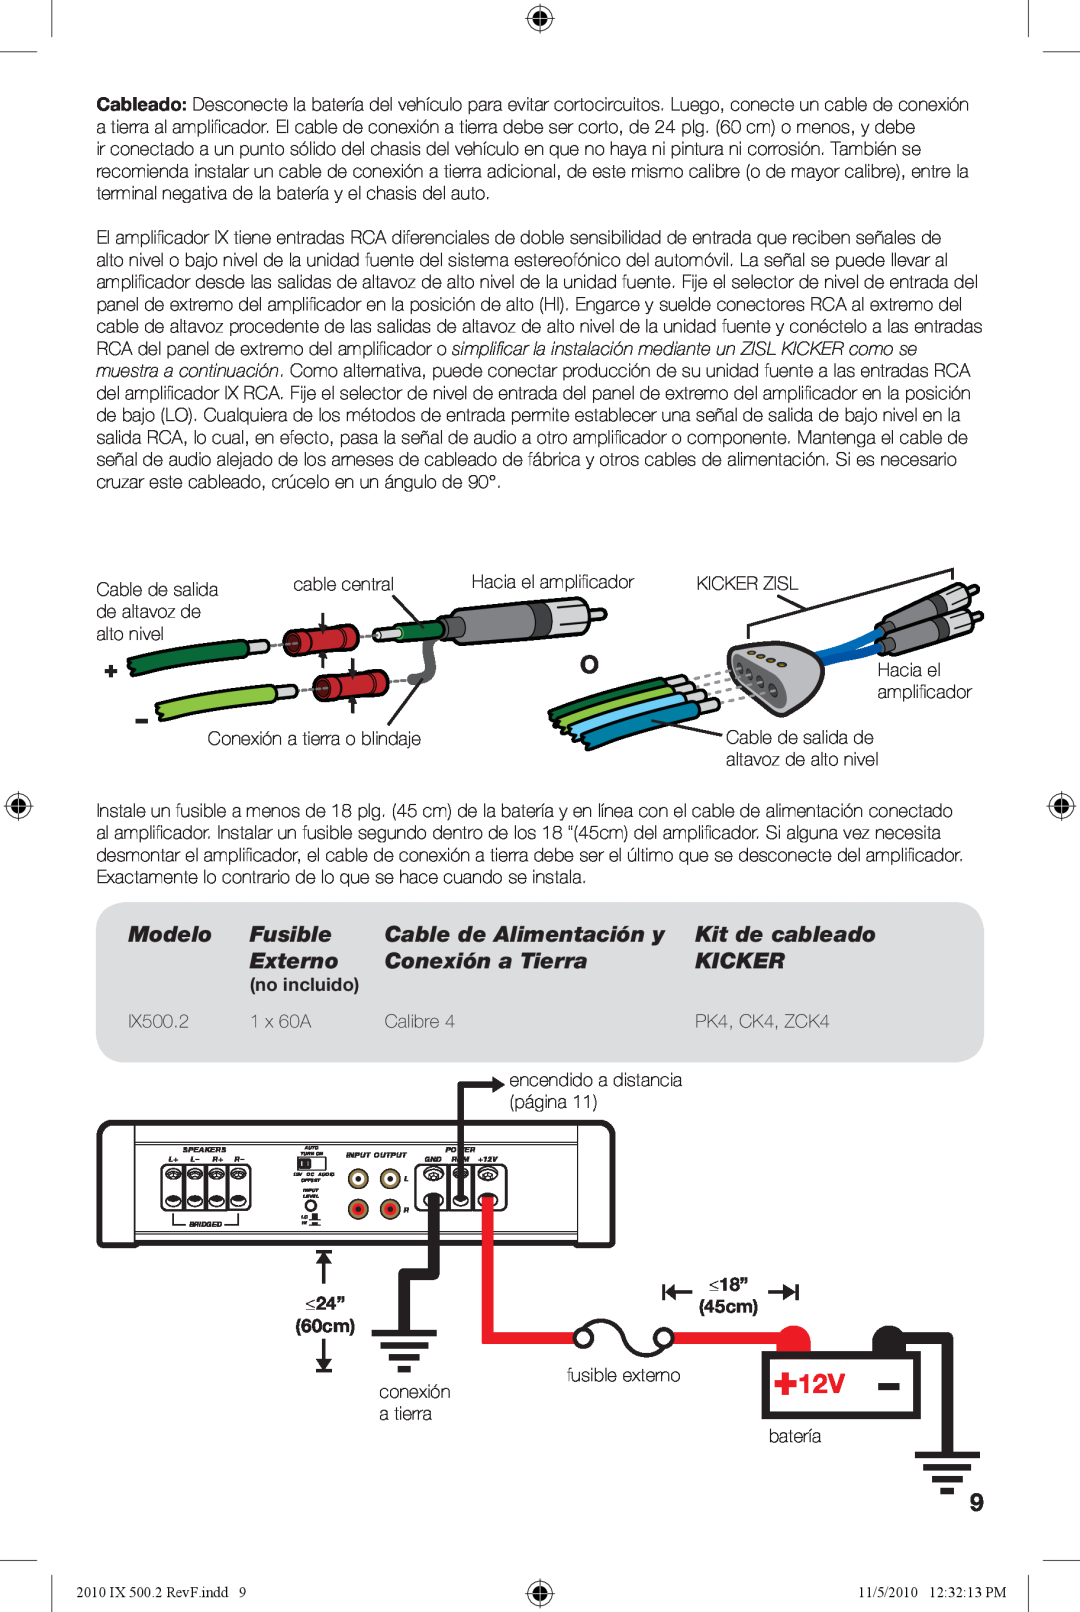 Kicker IX500.2 manual Modelo, Fusible, Cable de Alimentación y, Kit de cableado, Externo, Conexión a Tierra, Kicker 